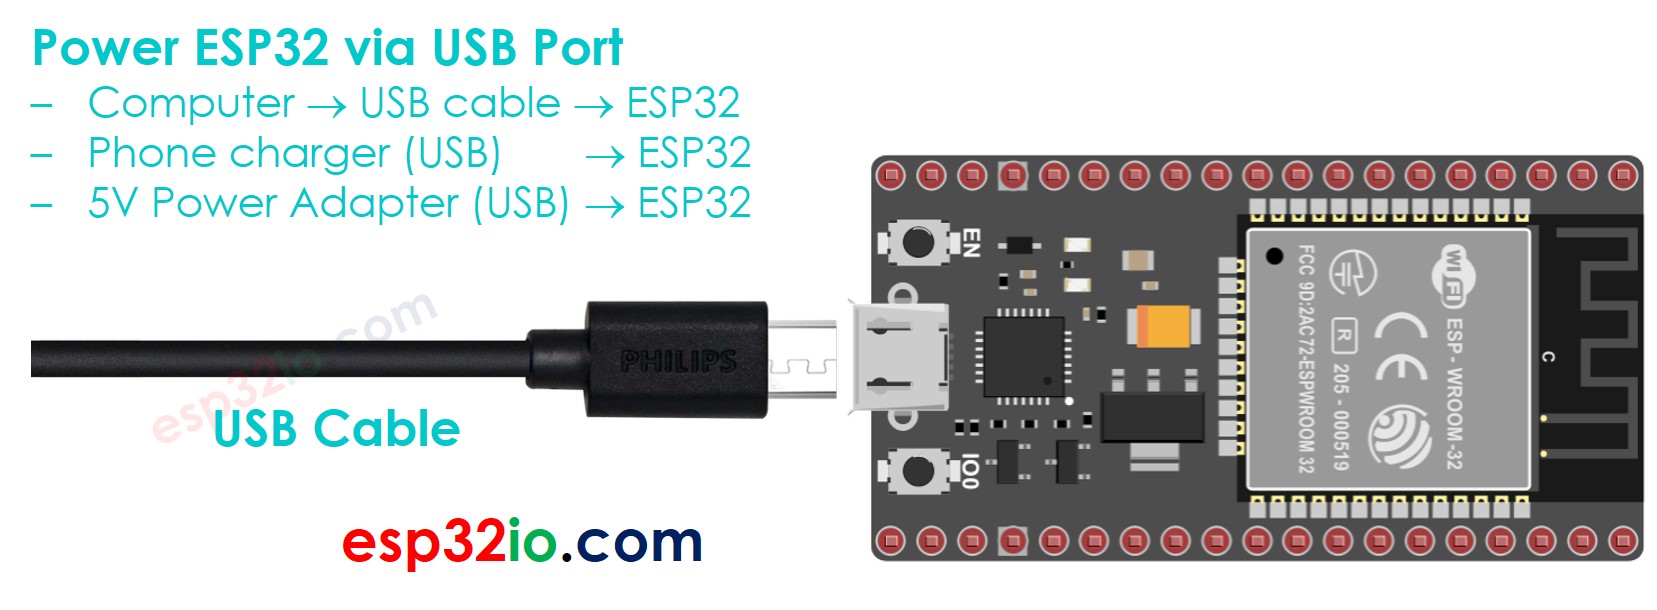 how to power ESP32 via USB port